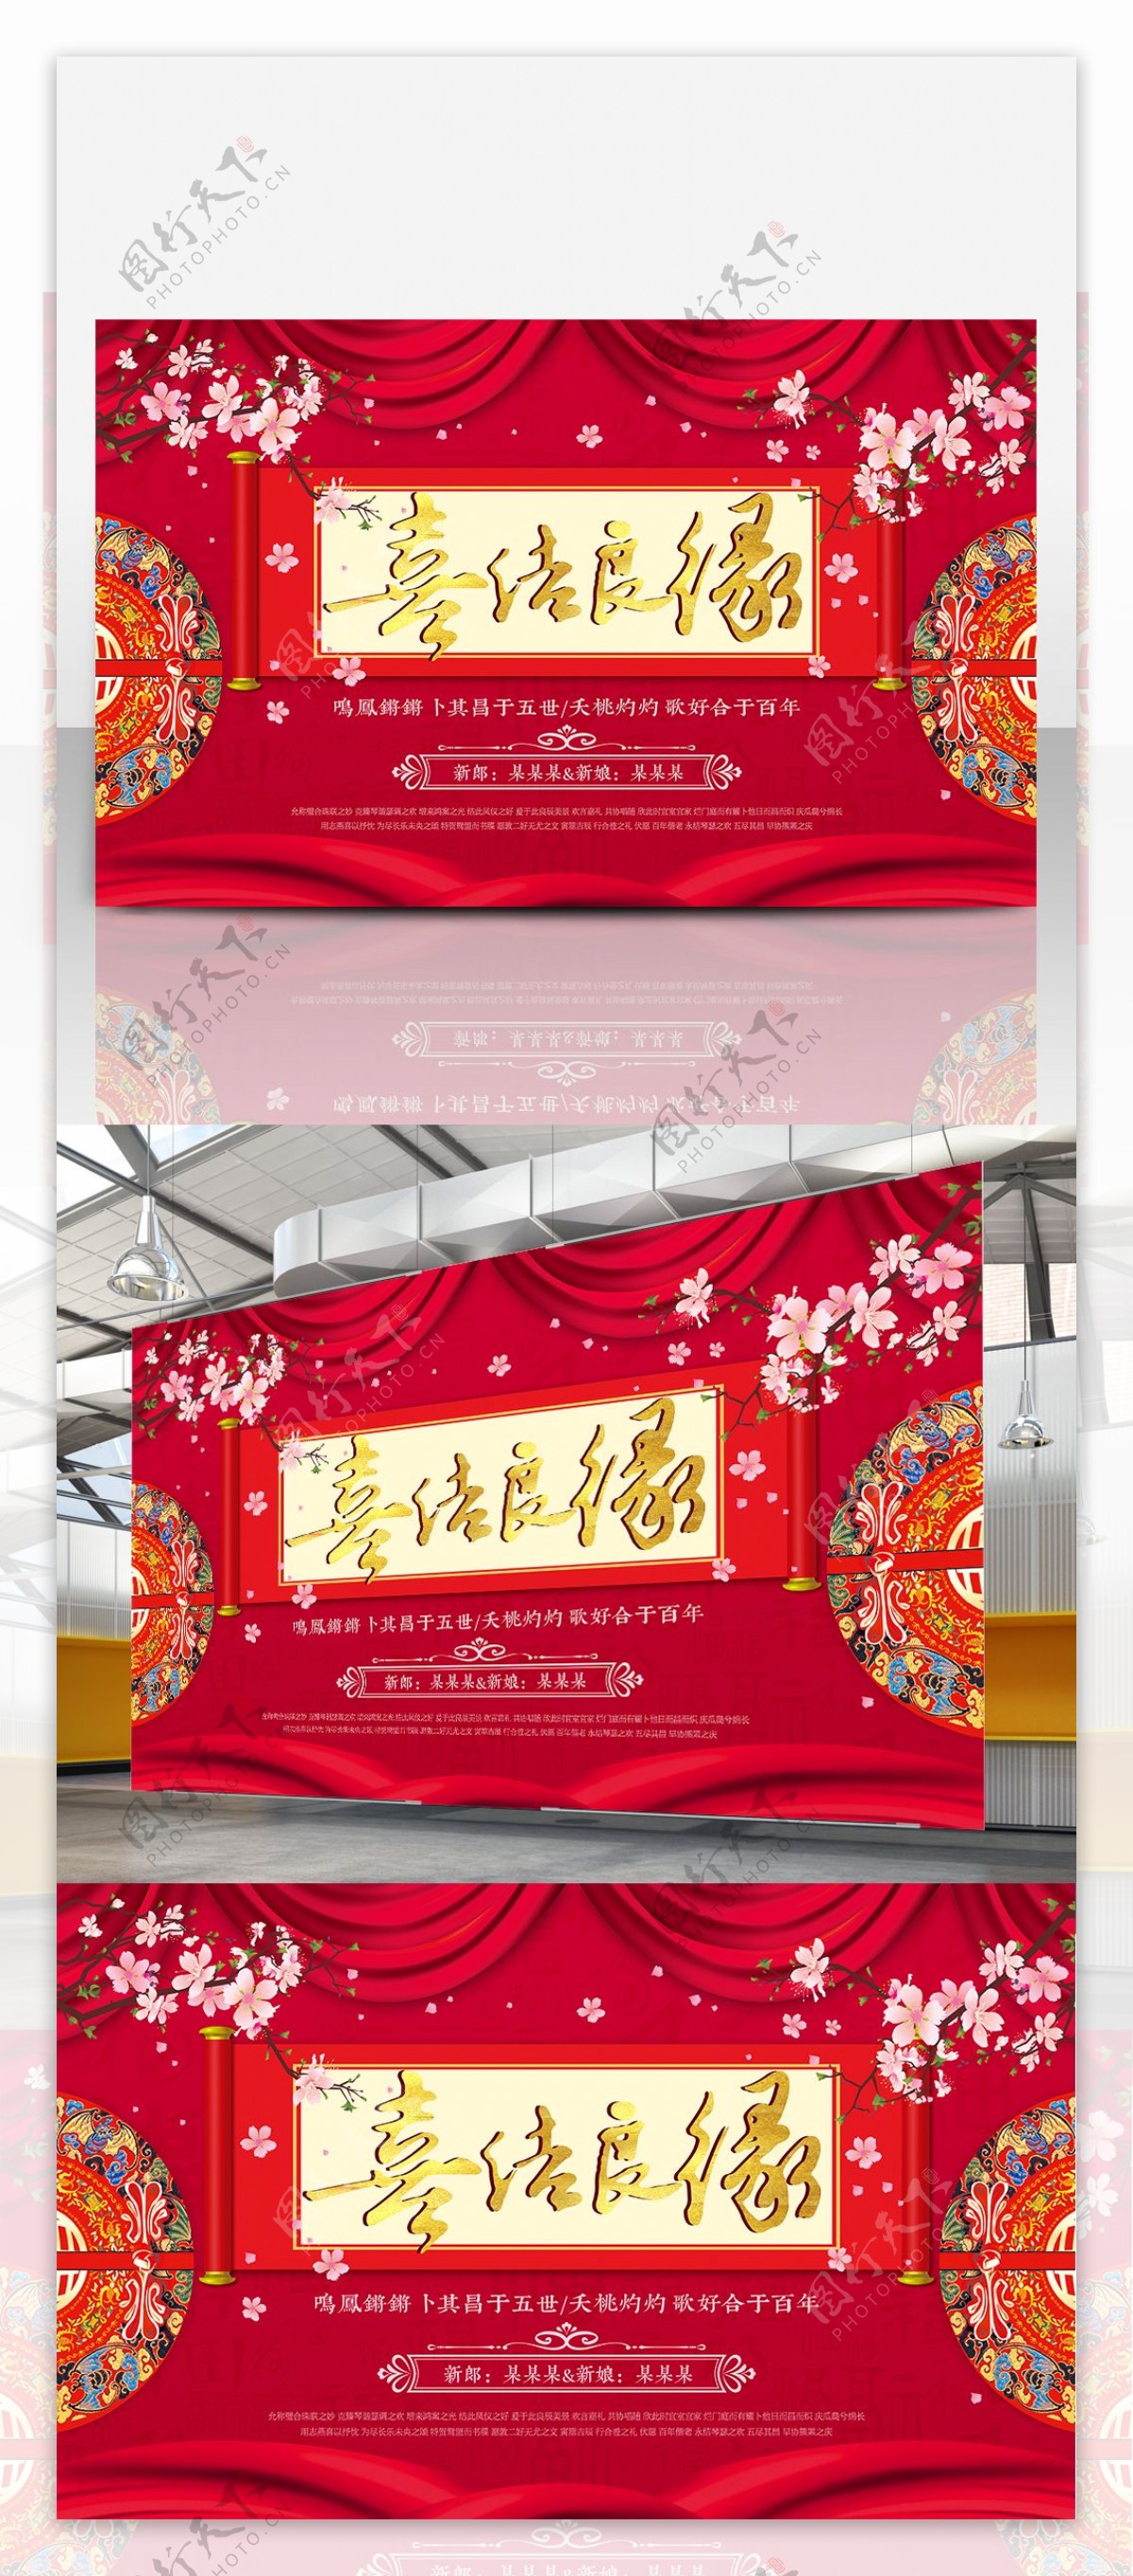 中式传统喜结良缘婚礼背景设计